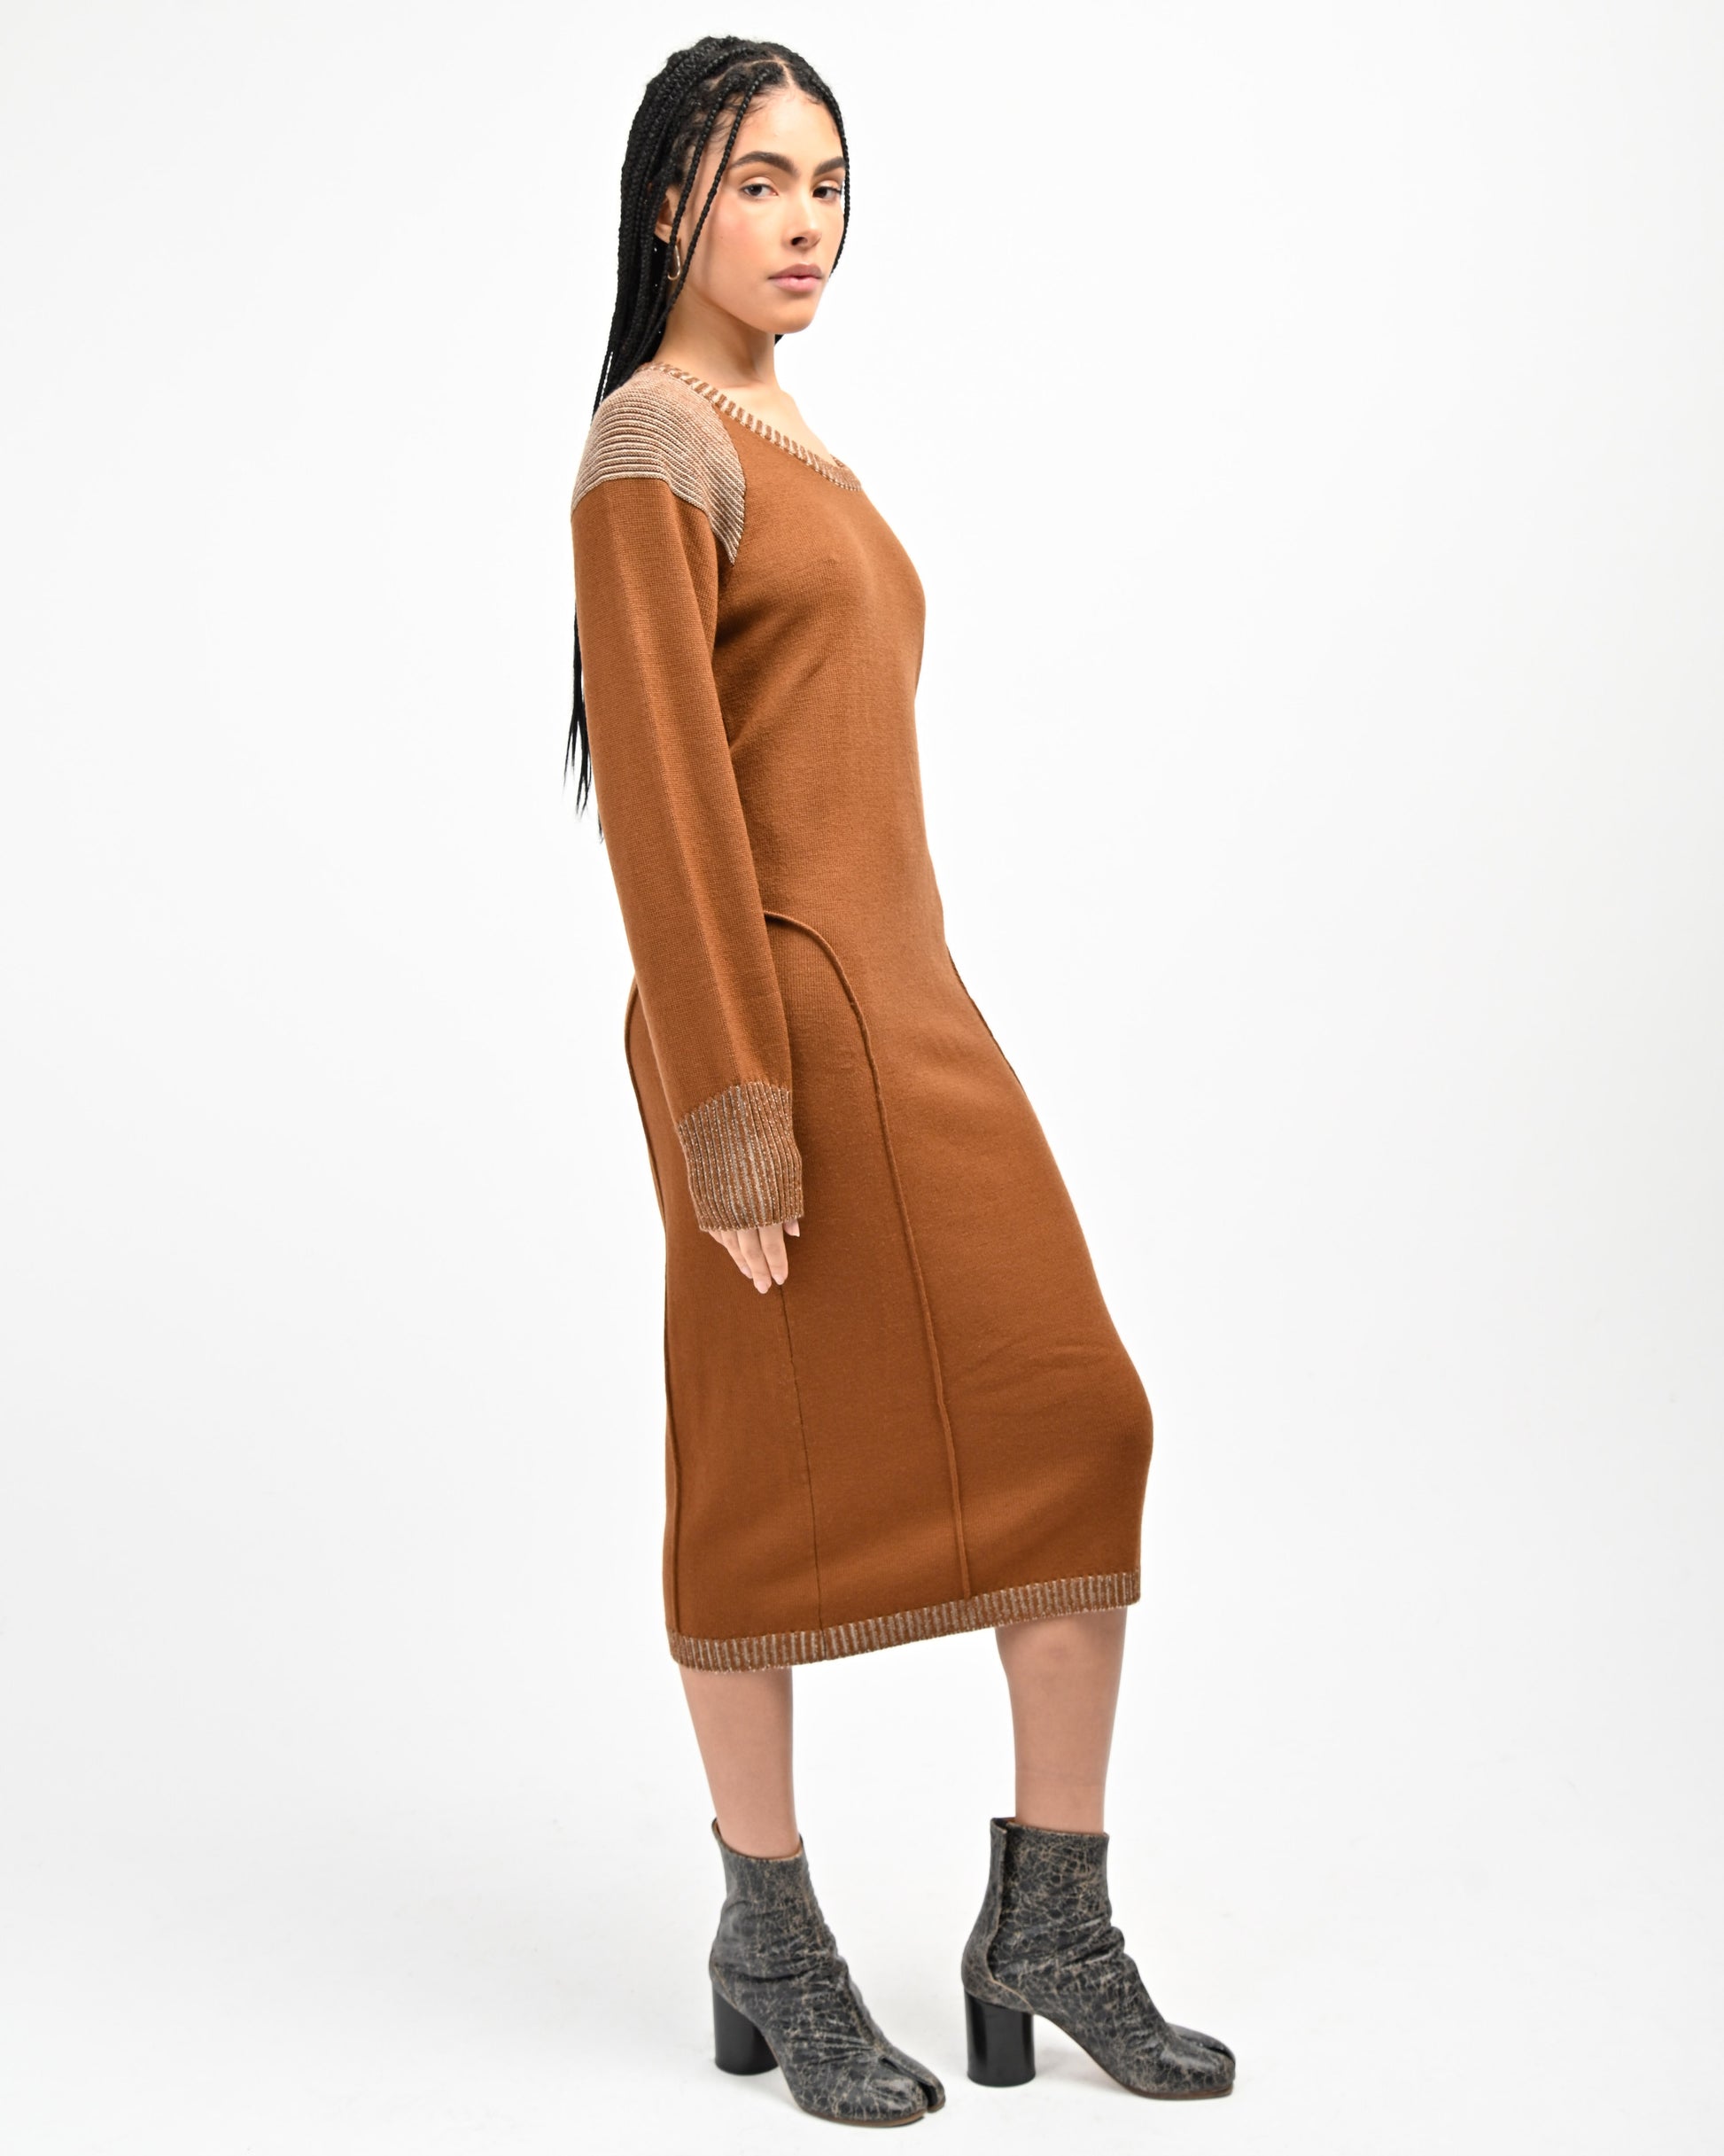 Model is wearing Lola Open Back Dress in Copper by Aseye Studio